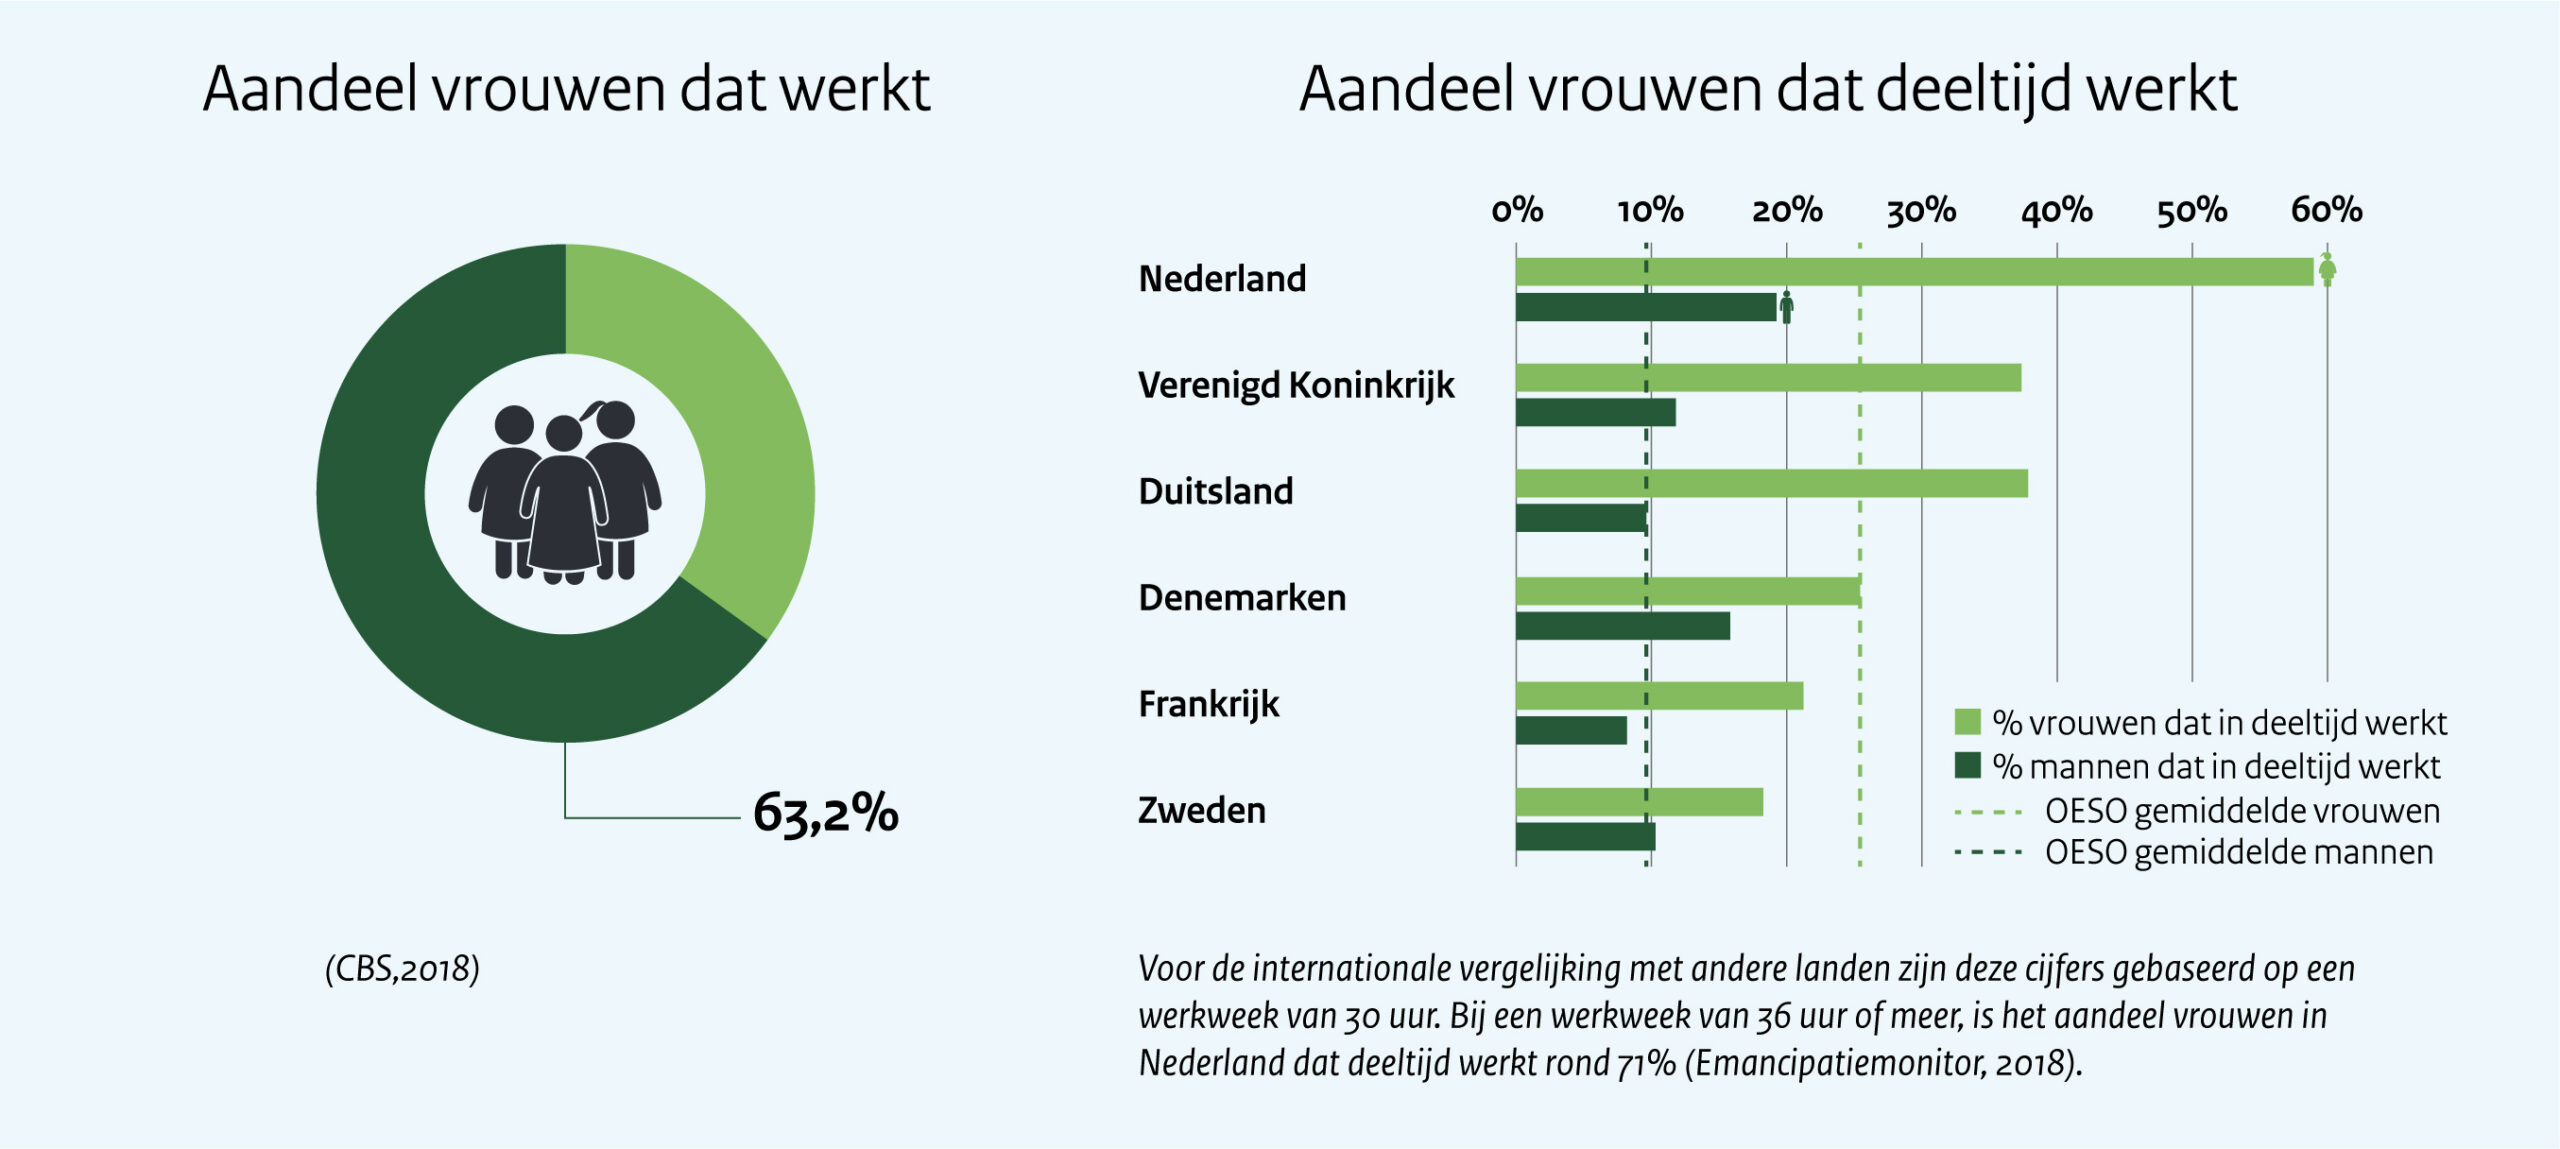 Aandeel van vrouwen dat werkt   In Nederland is het aandeel vrouwen dat (voltijds) werkt 63,2 %.  Dit percentage is afkomstig uit de cijfers van het CBS over het verschil van arbeidsdeelname tussen mannen en vrouwen in 2018. 